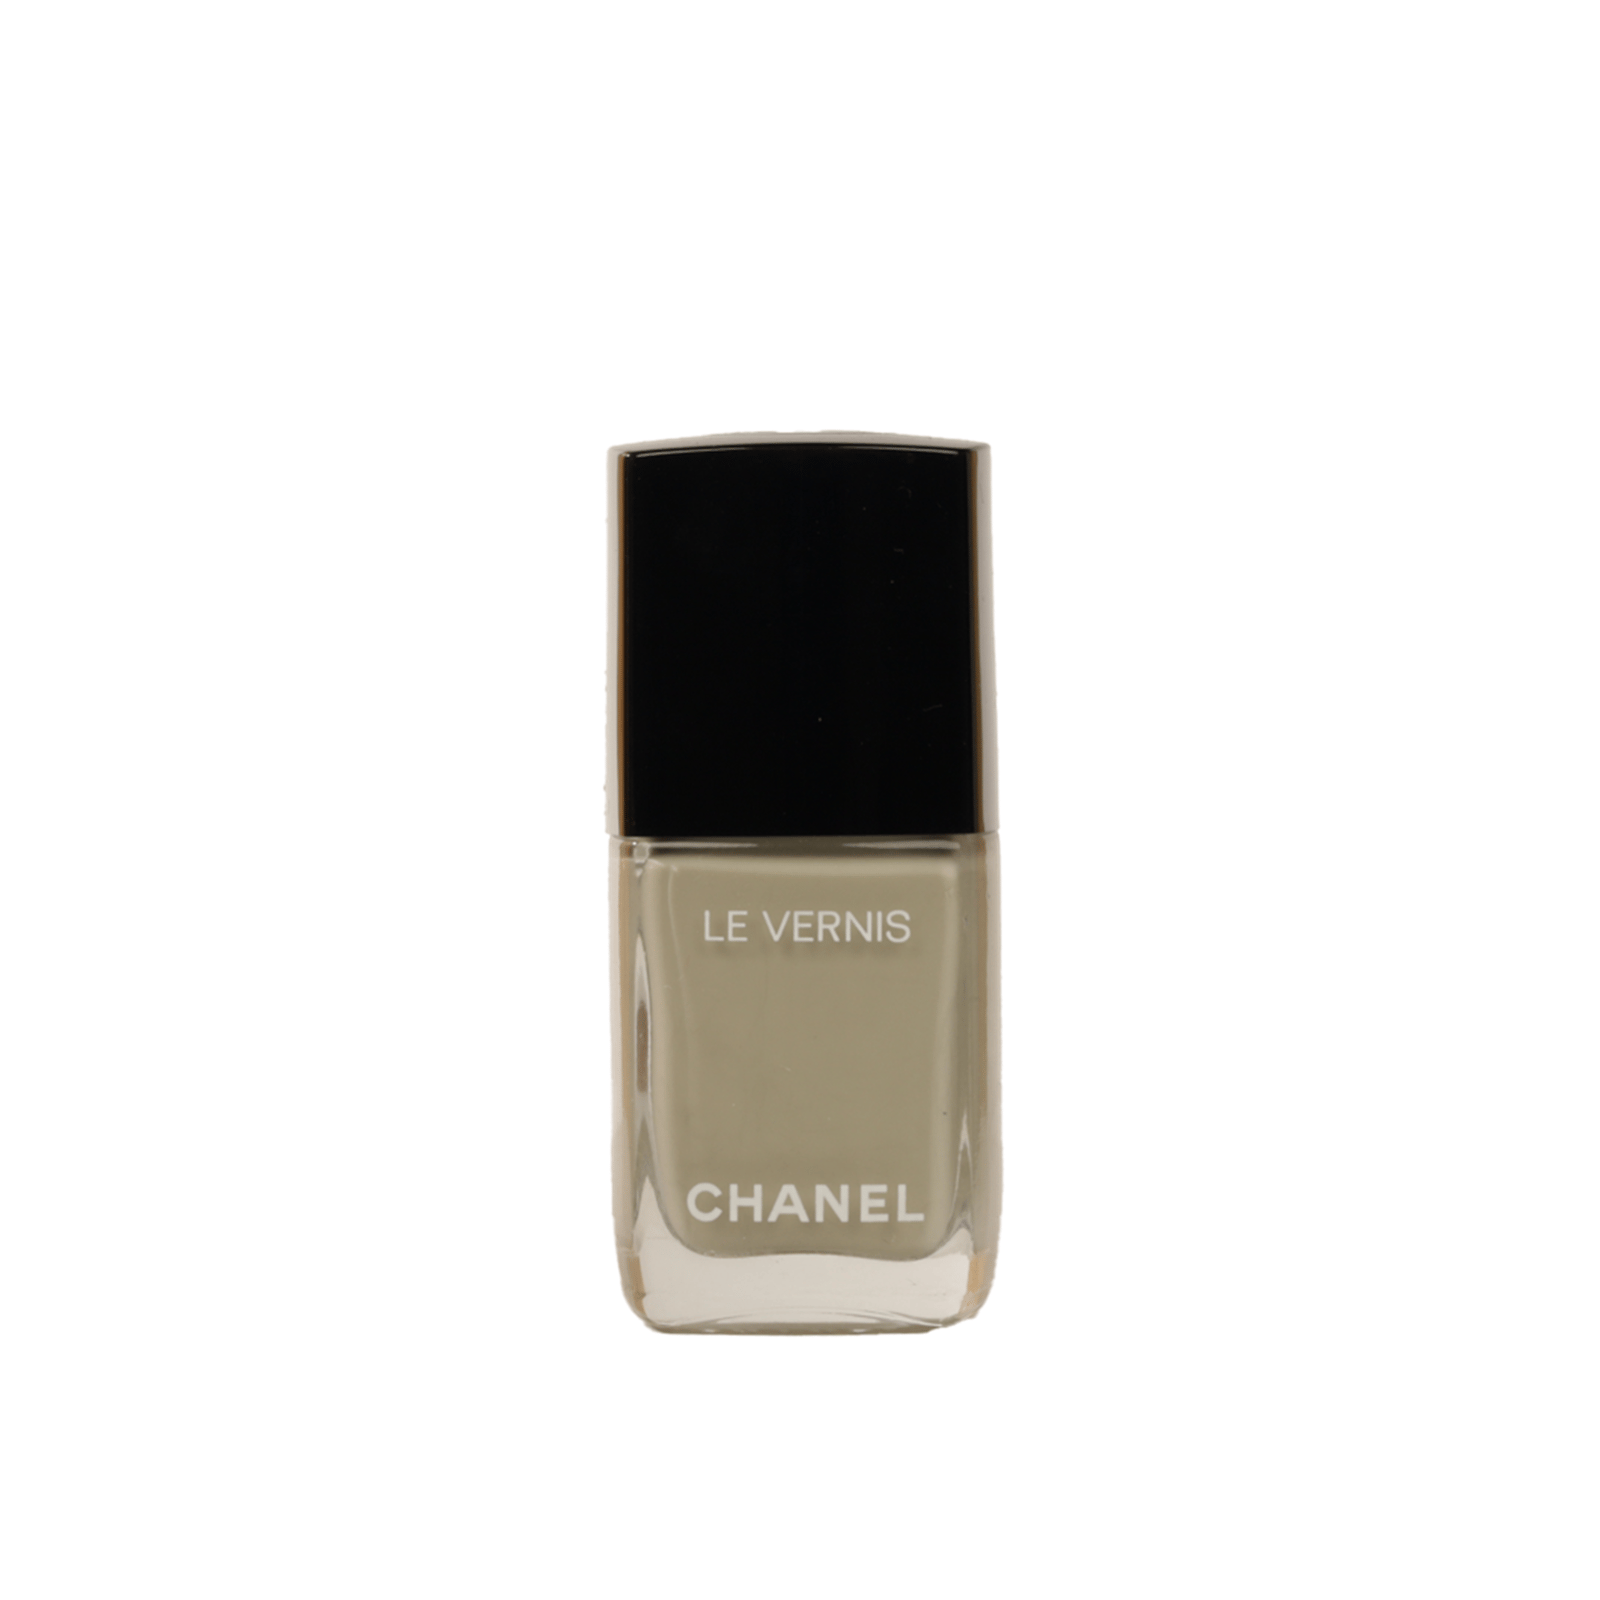 CHANEL Le Vernis Longwear Nail Colour 522 Monochrome 13ml (0.4 fl oz)